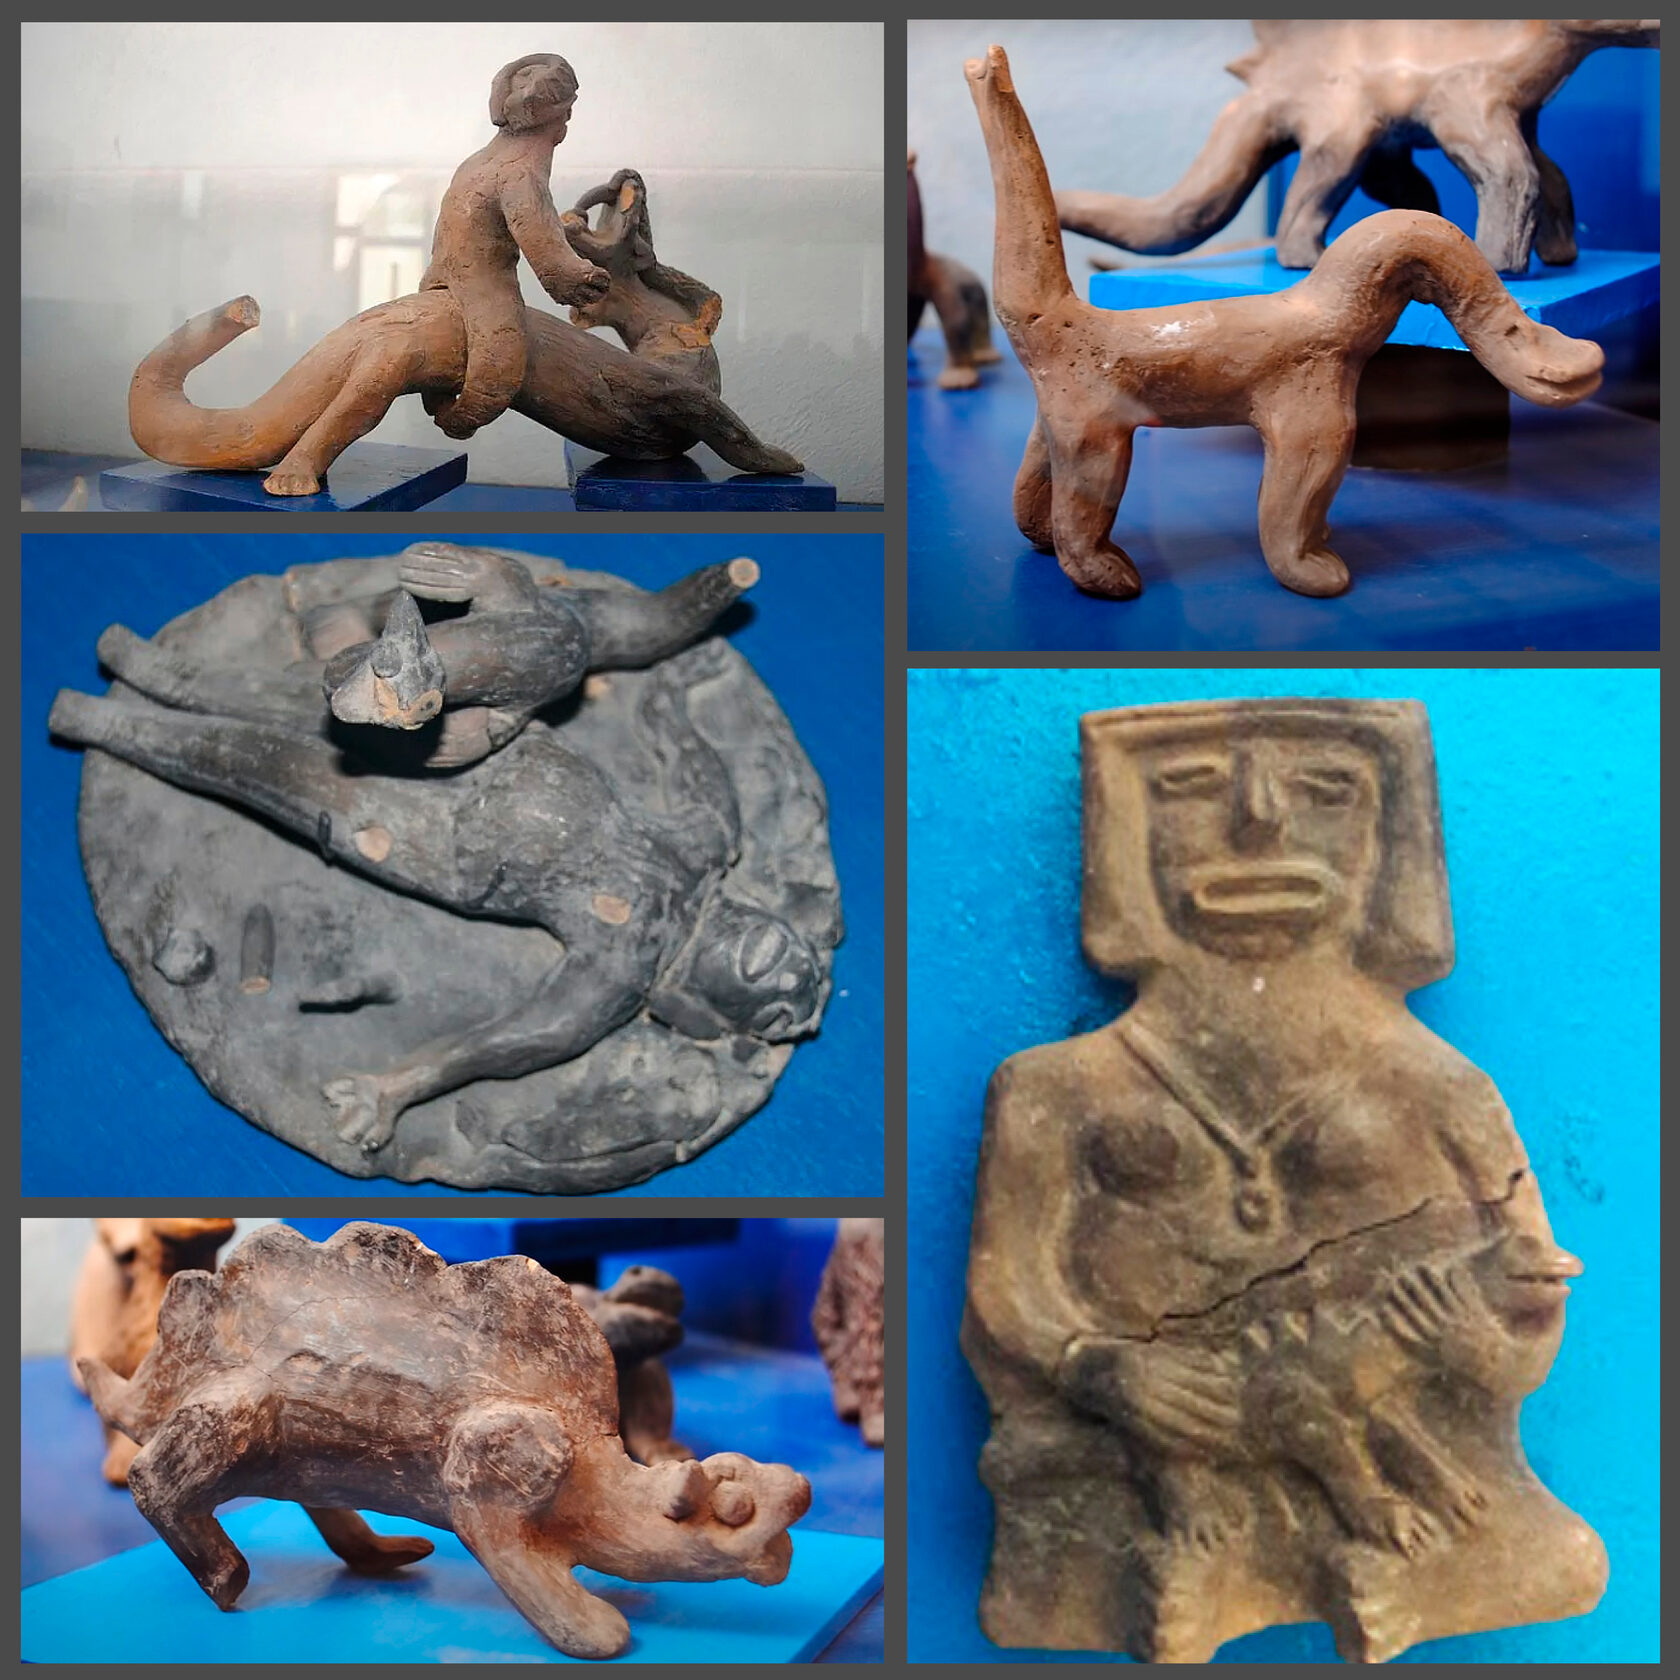 Фигурки динозавров и людей из Музея Вальдемара Юльсруда, Акамбаро, Мексика.